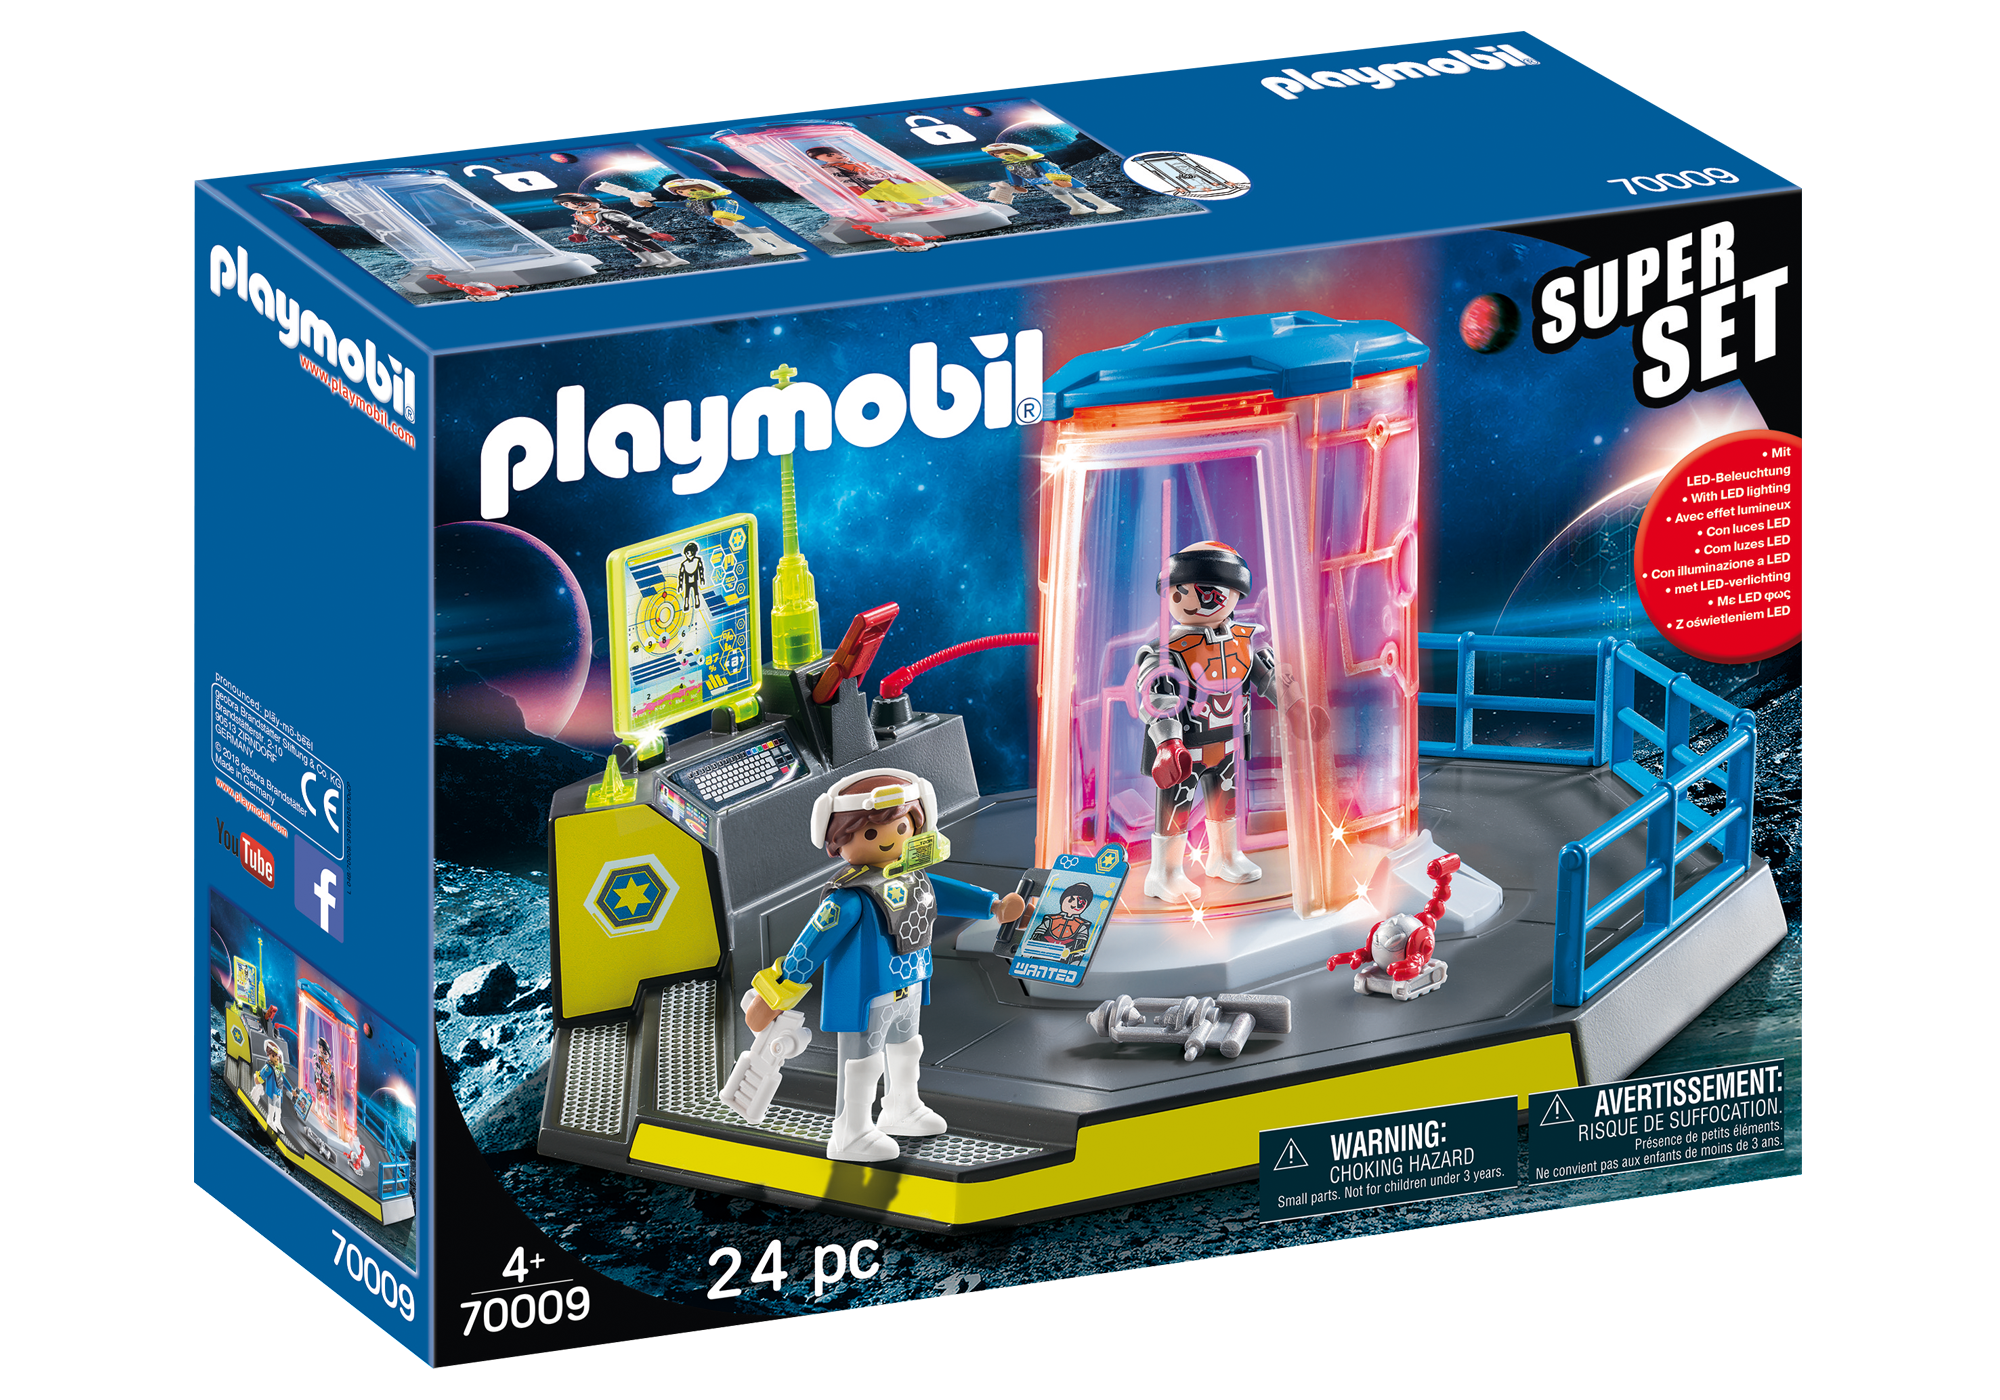 Playmobil Space 2018 70009_product_box_front?locale=de-DE,de,*&$pdp_product_main_xl$&strip=true